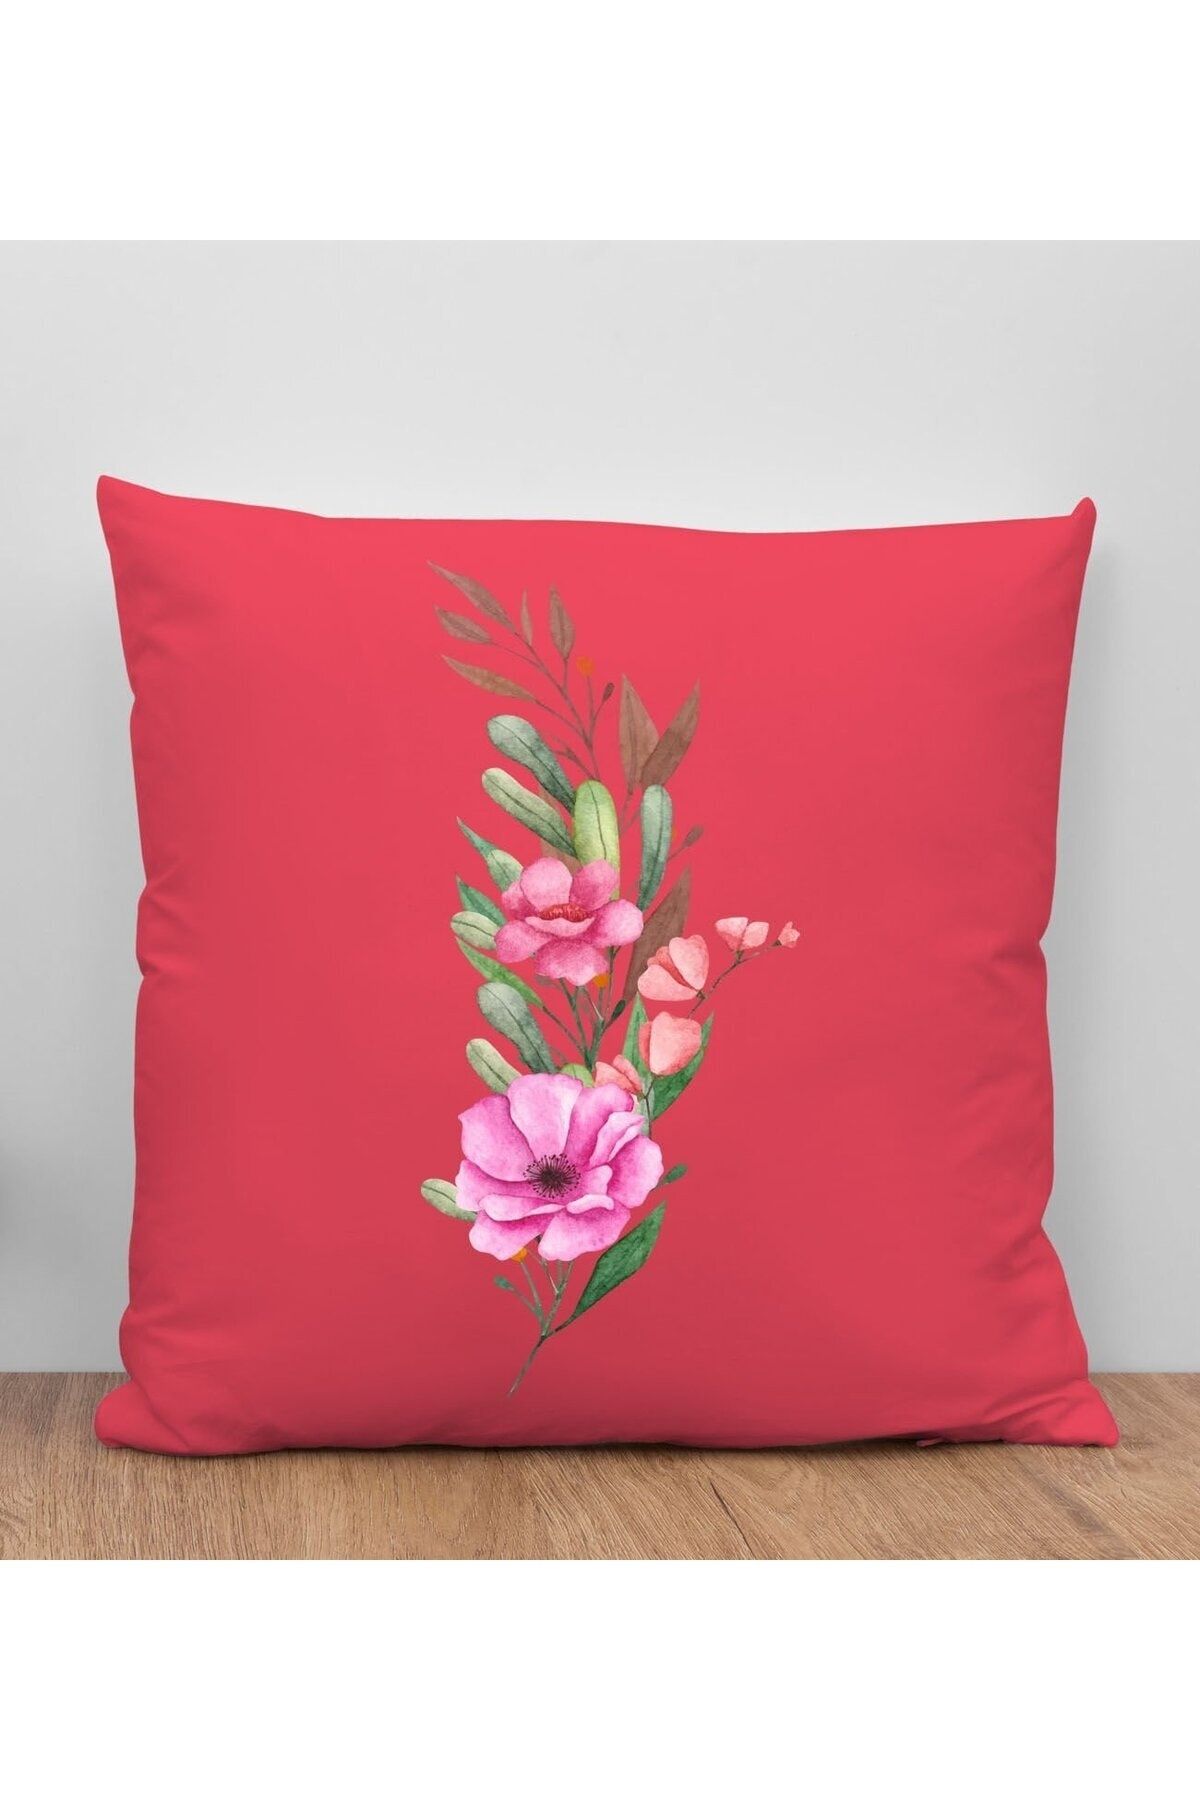 Bk Gift Çiçek Tasarımlı Kırmızı Kırlent Yastık, Arkadaşa , Ev Dekorasyonu